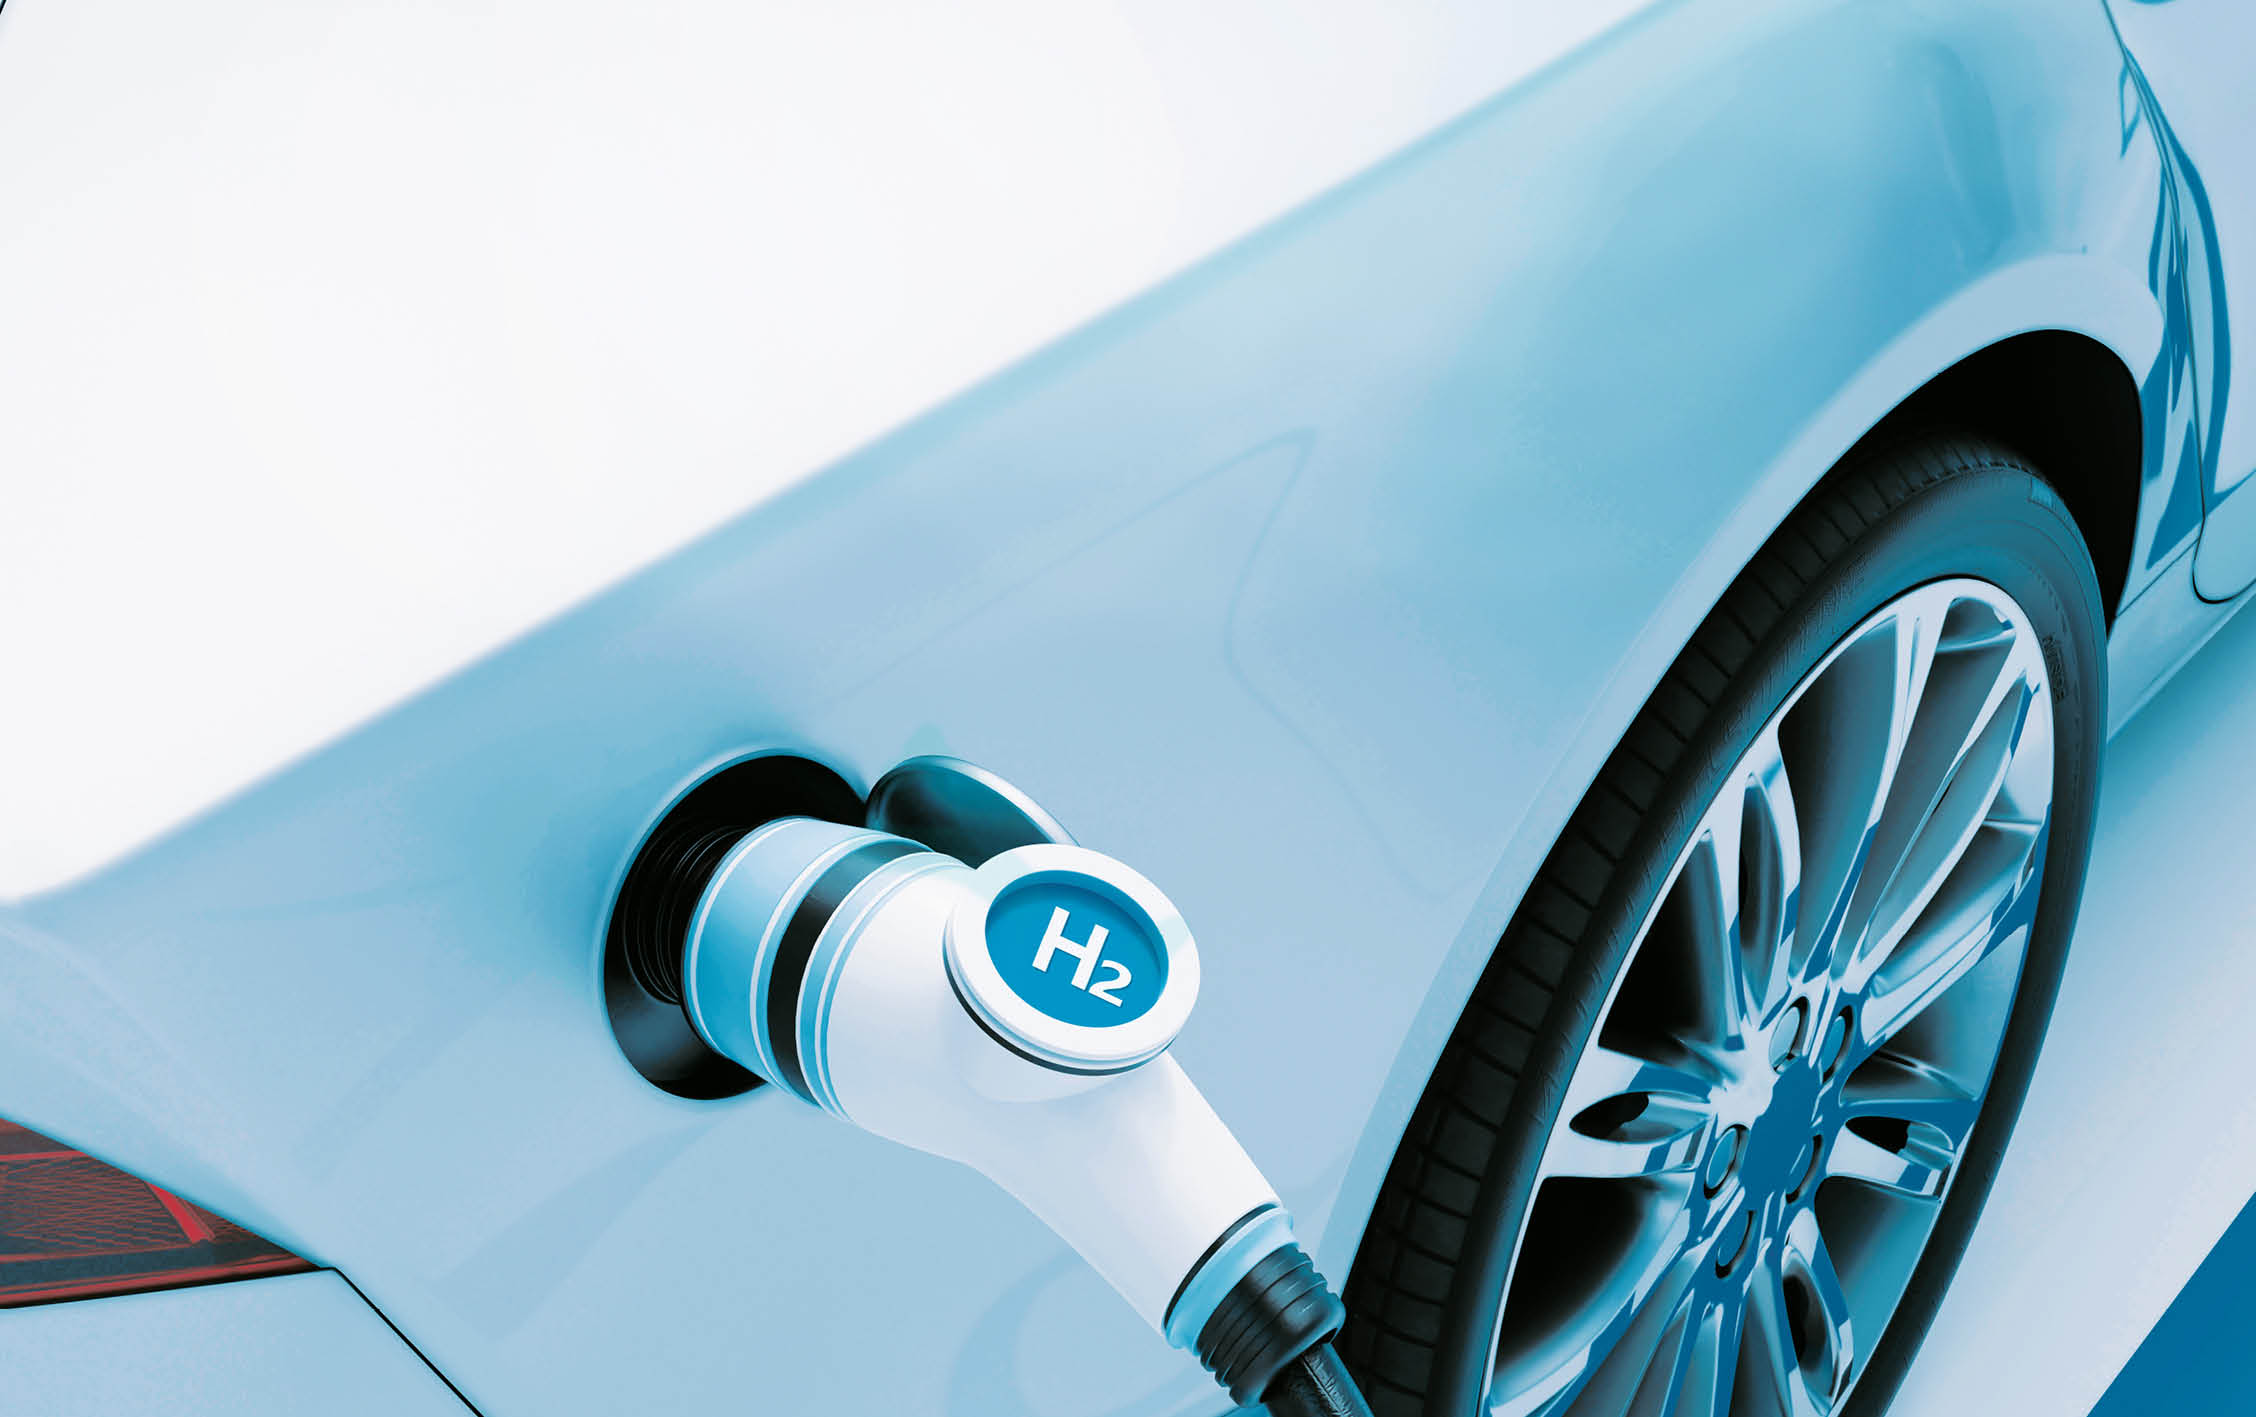 Hydrogen fuel car charging station white color visual concept design. 3d Illustration